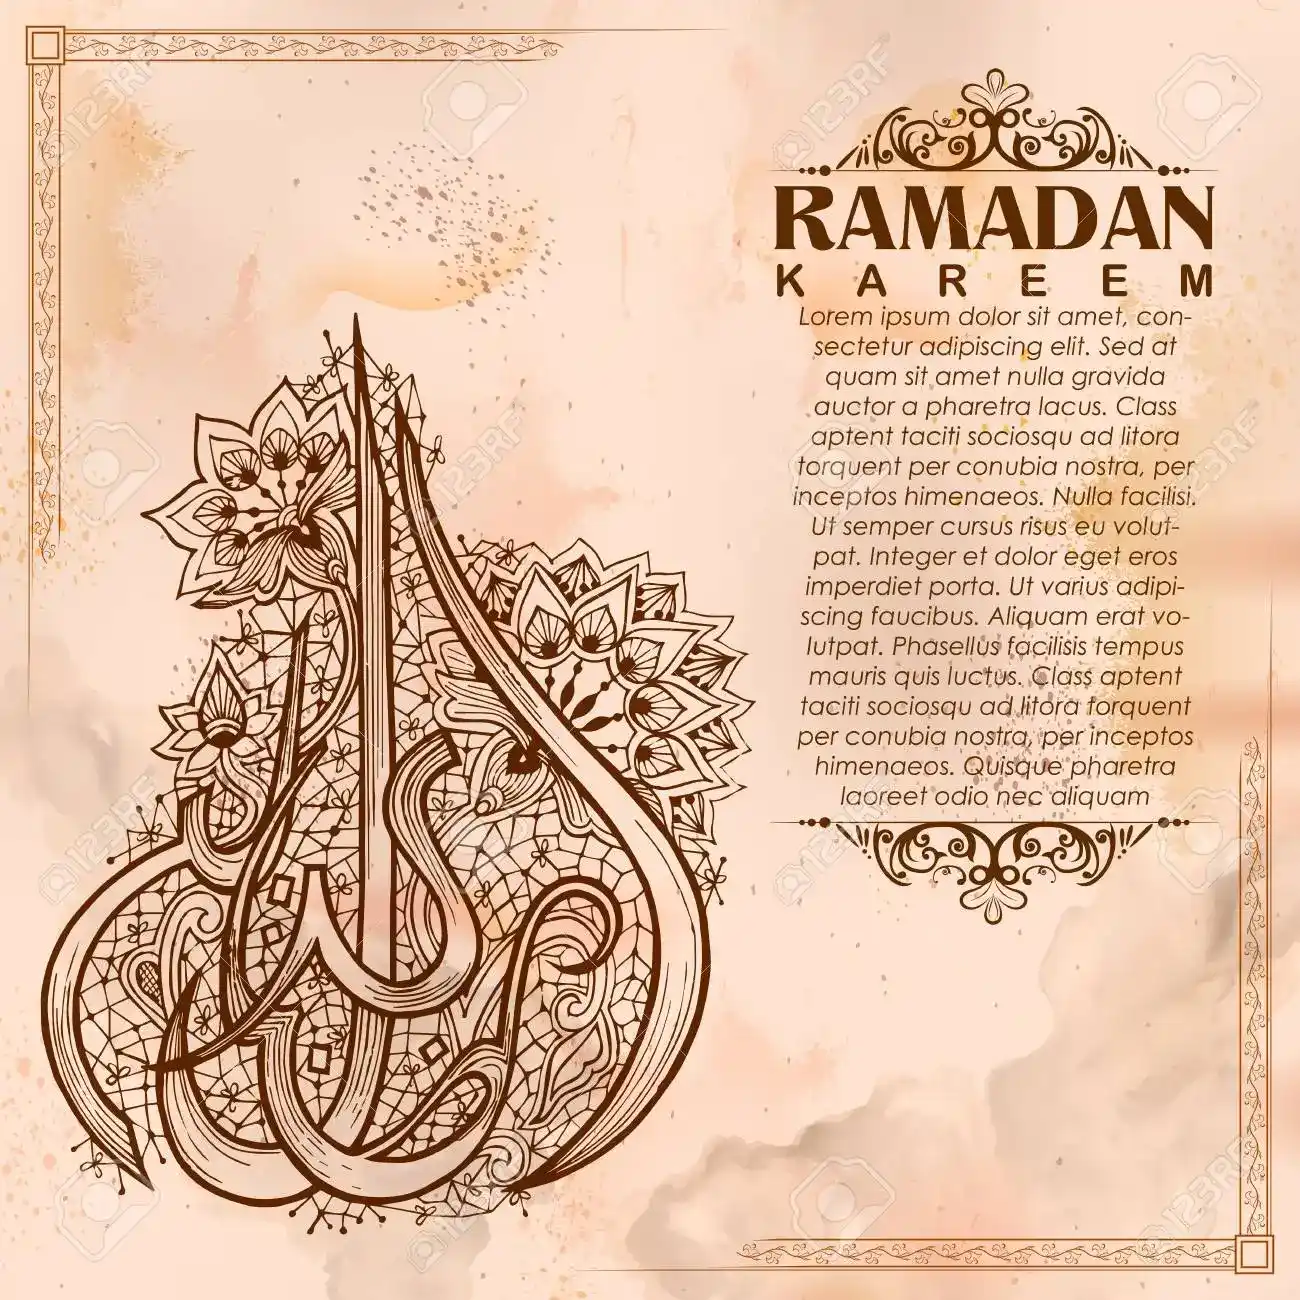 Ramadan Greetings and Wishes in Arabic